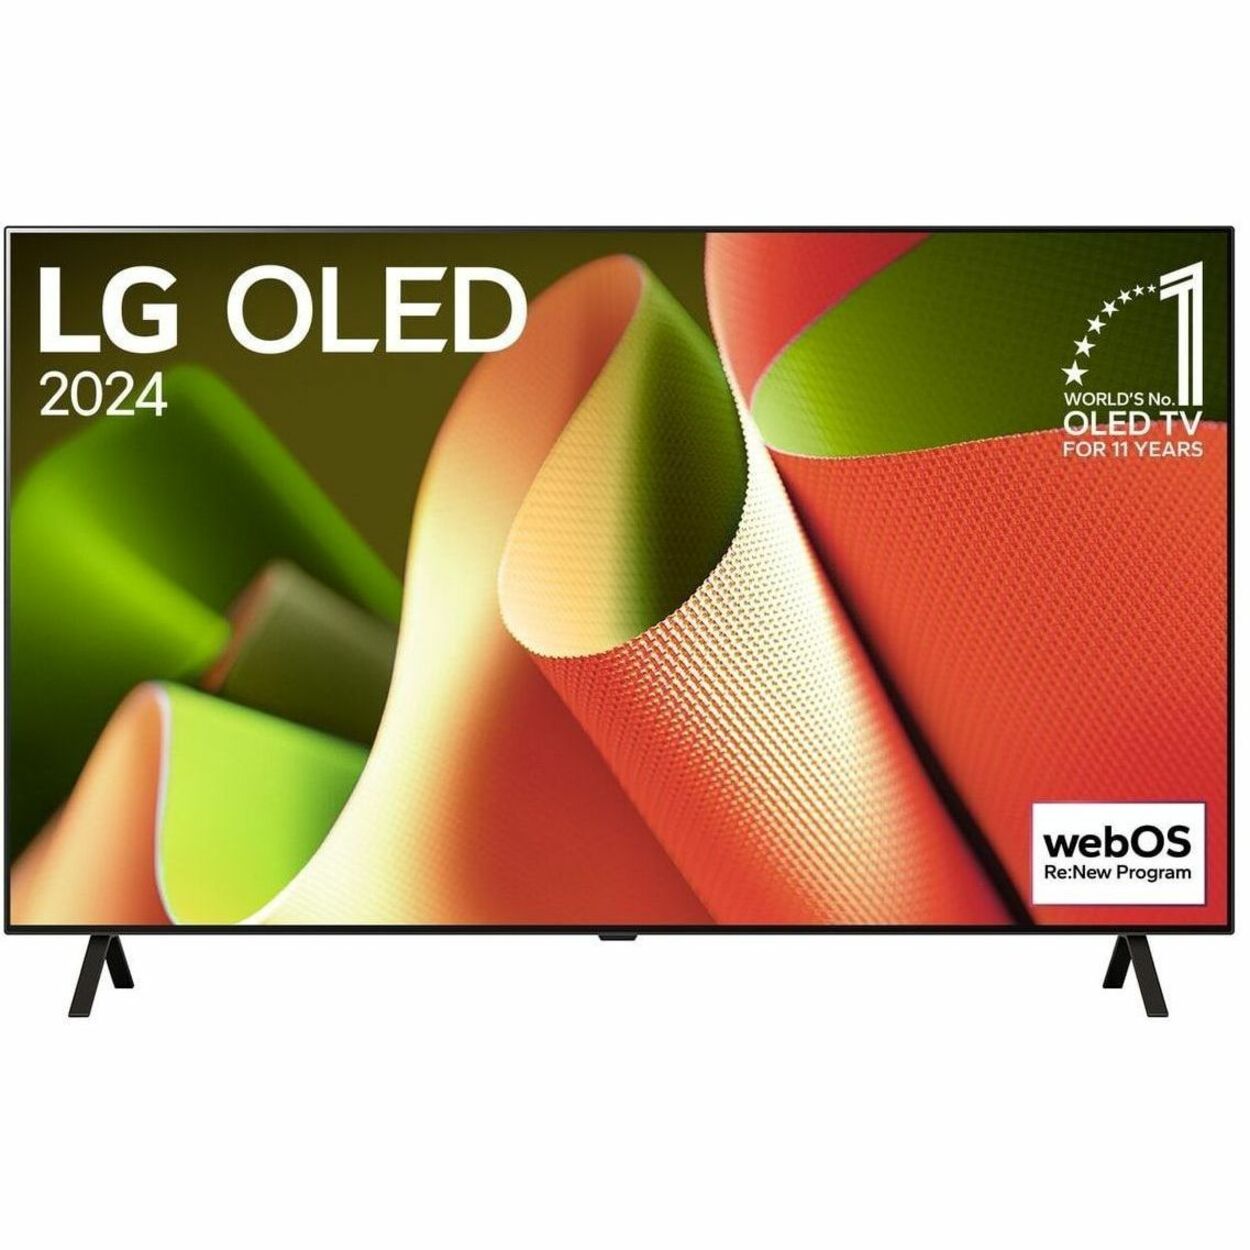 LG B4PUA OLED65B4PUA 64.5 Smart OLED TV - 4K UHDTV